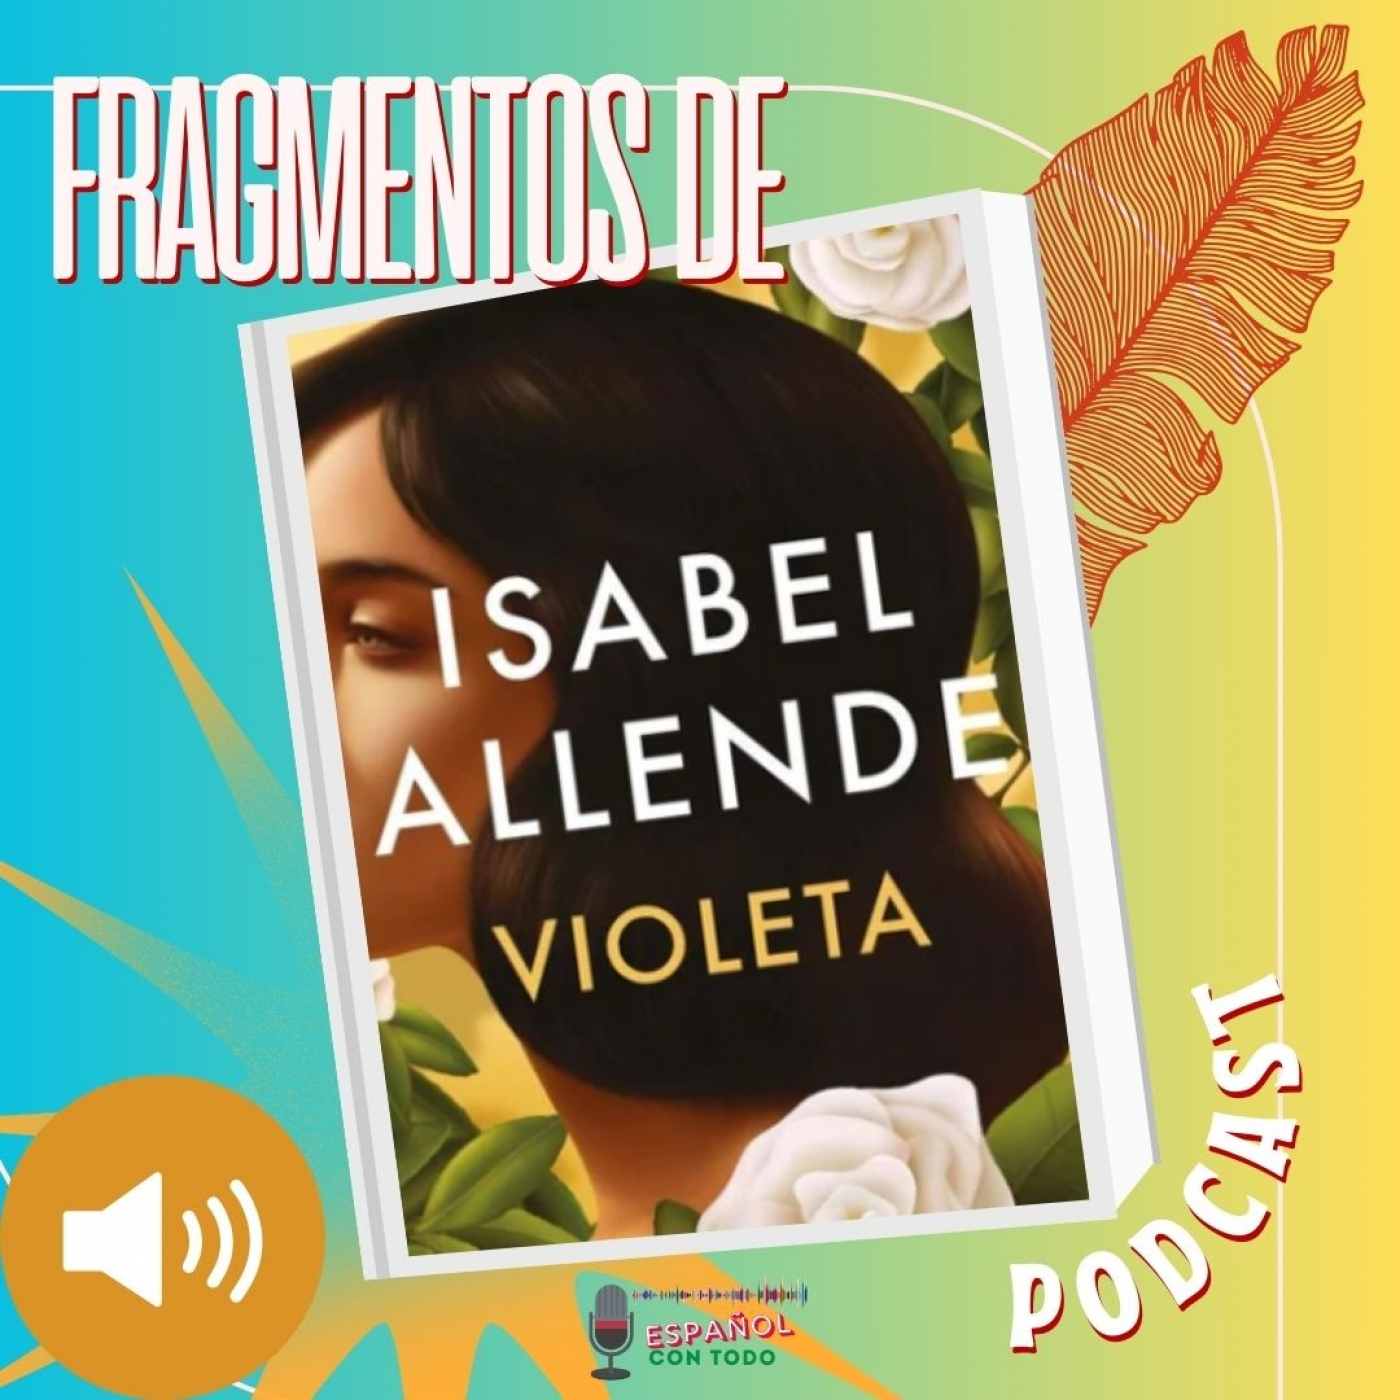 053 - Fragmentos de ”Violeta” de Isabel Allende